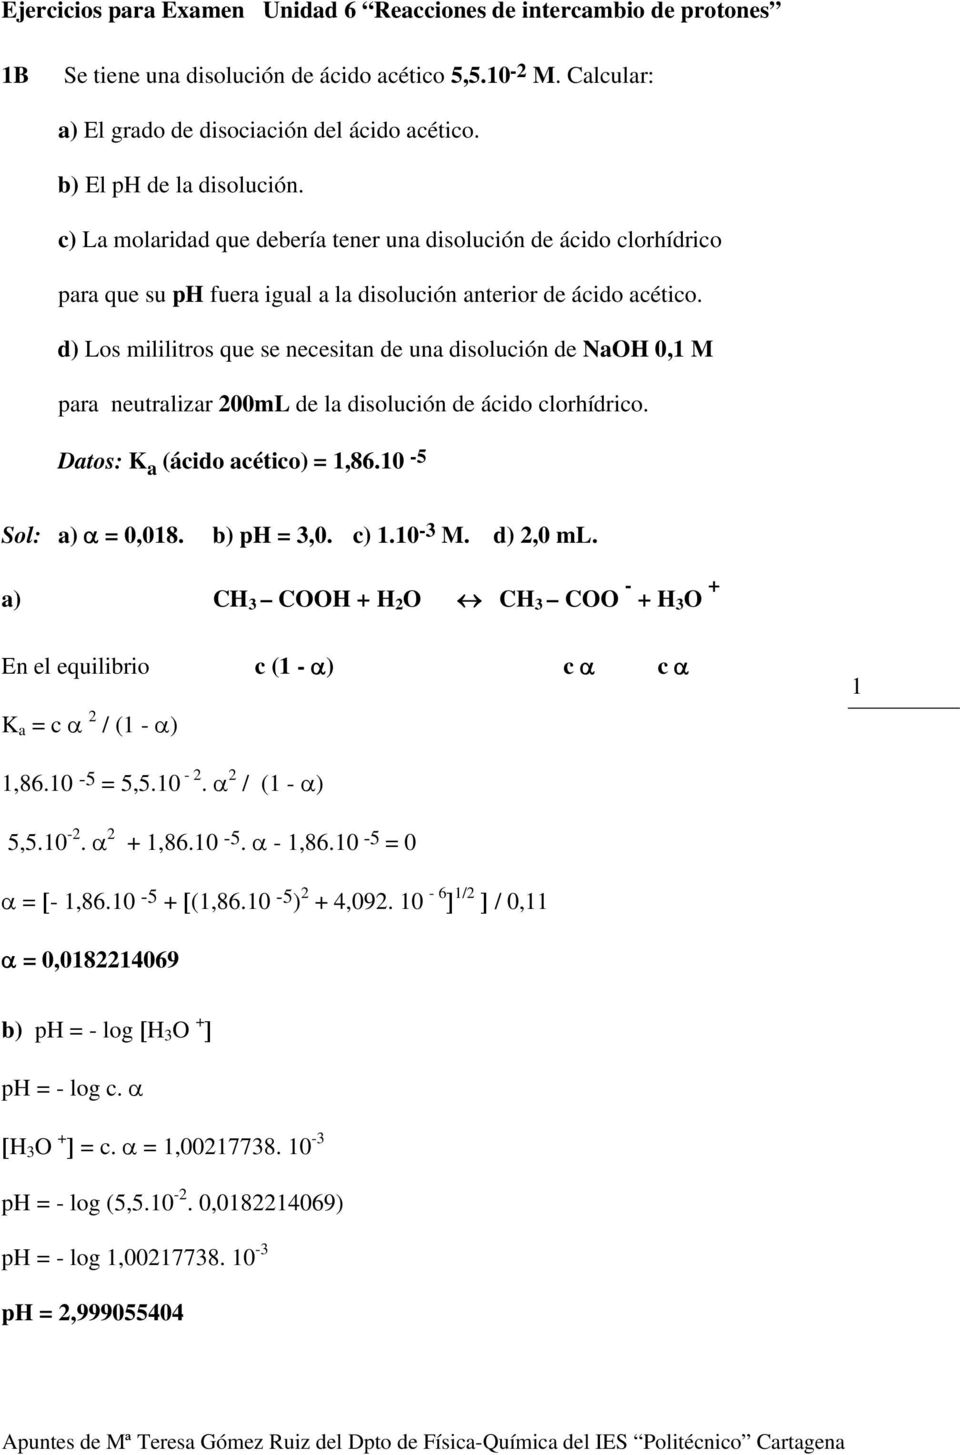 d) Los mililitros que se necesitan de una disolución de NaOH 0,1 M para neutralizar 200mL de la disolución de ácido clorhídrico. Datos: K a (ácido acético) = 1,86.10-5 Sol: a) α = 0,018. b) ph = 3,0.